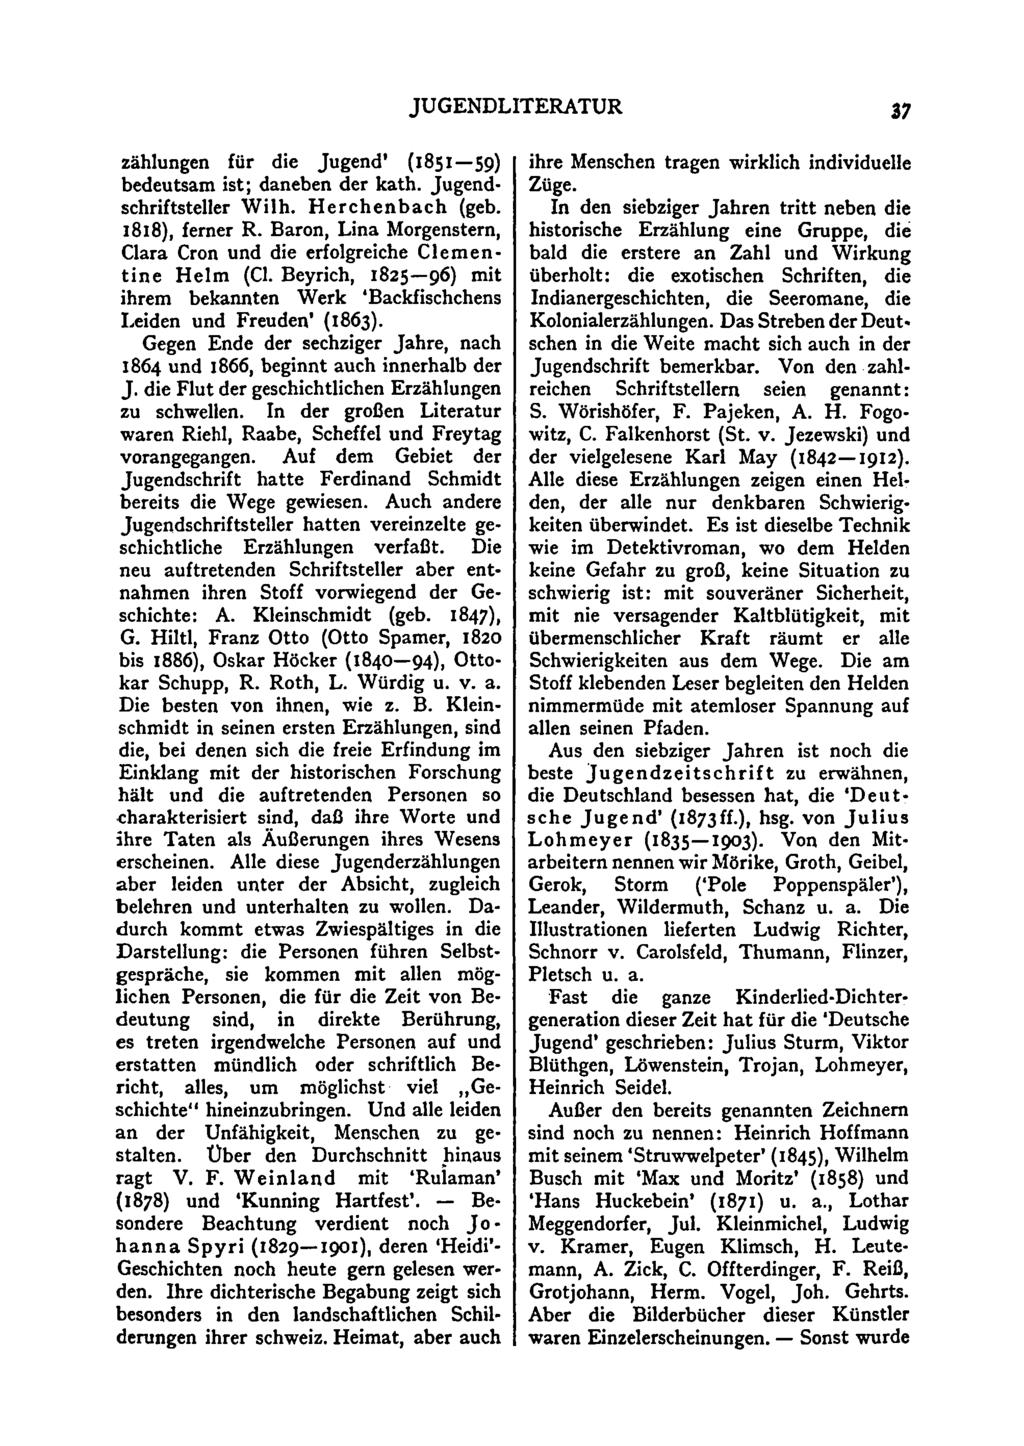 JUGENDLITERATUR 37 Zählungen für die Jugend' (1851 59) bedeutsam ist; daneben der kath. Jugendschriftsteller Wilh. Herchenbach (geb. 1818), ferner R.